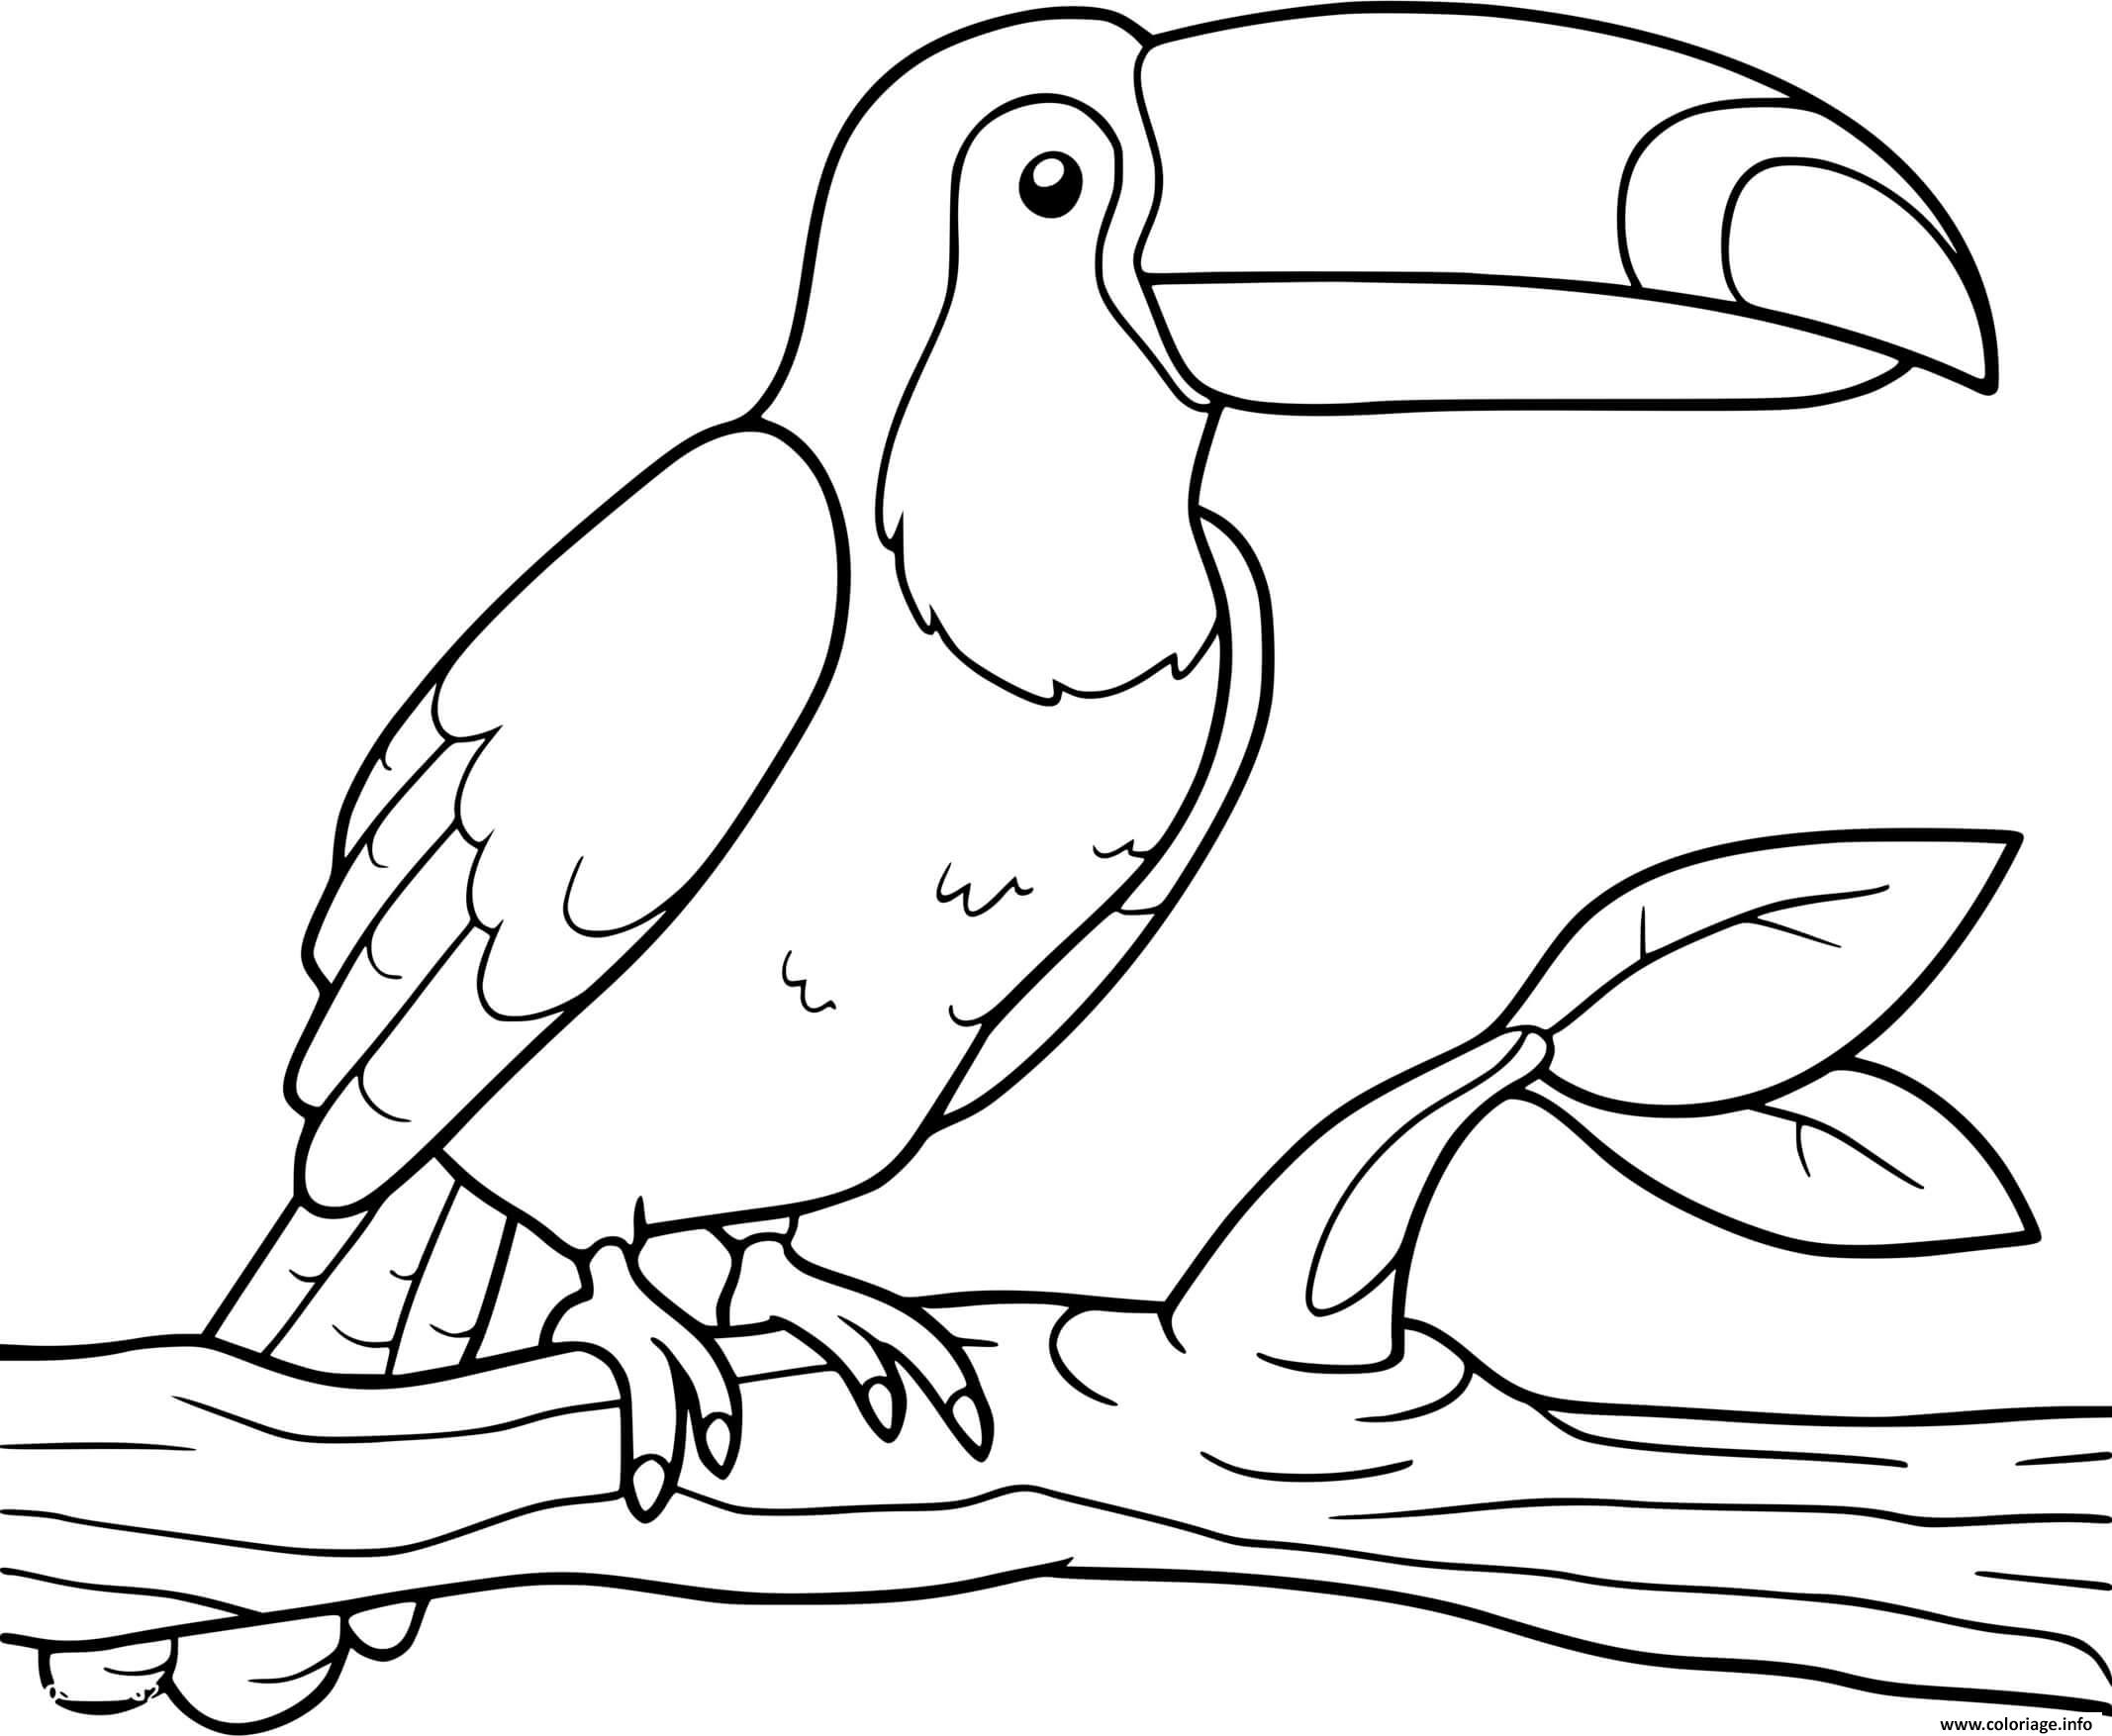 Dessin toucan amerique du sud oiseau Coloriage Gratuit à Imprimer